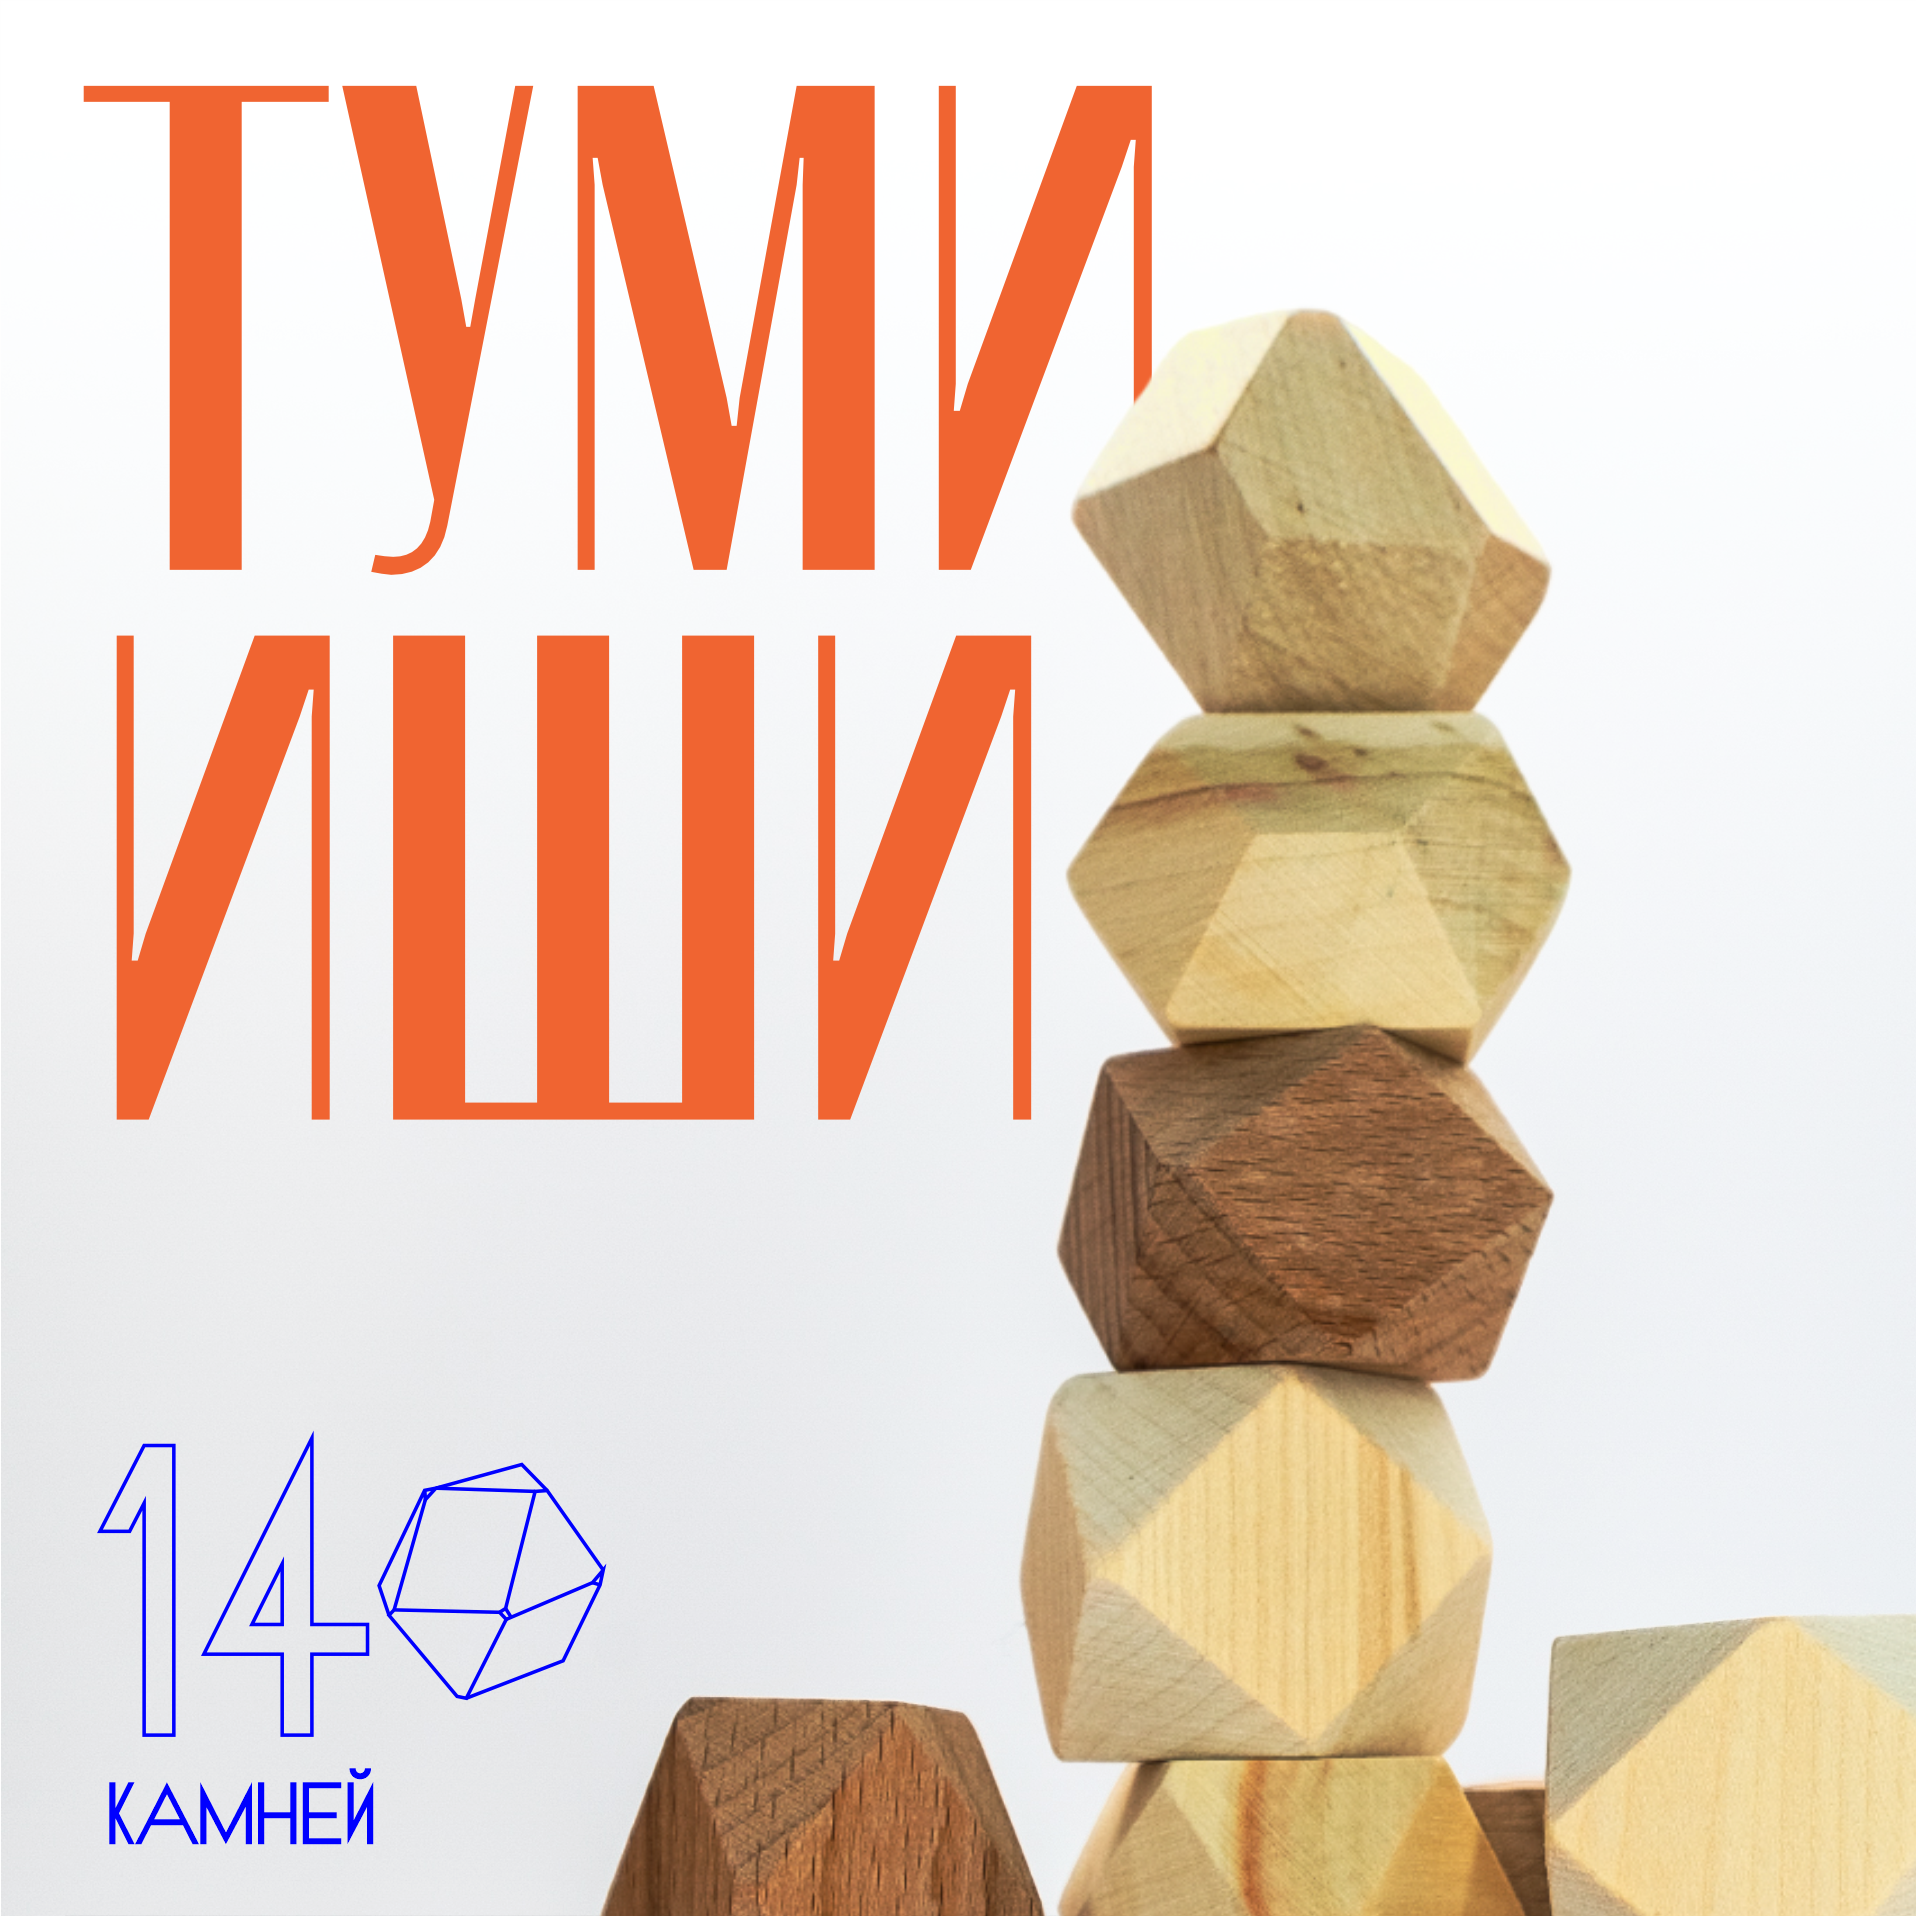 Настольная игра Игрушки для ума Падающая башня Туми Иши 14 камней